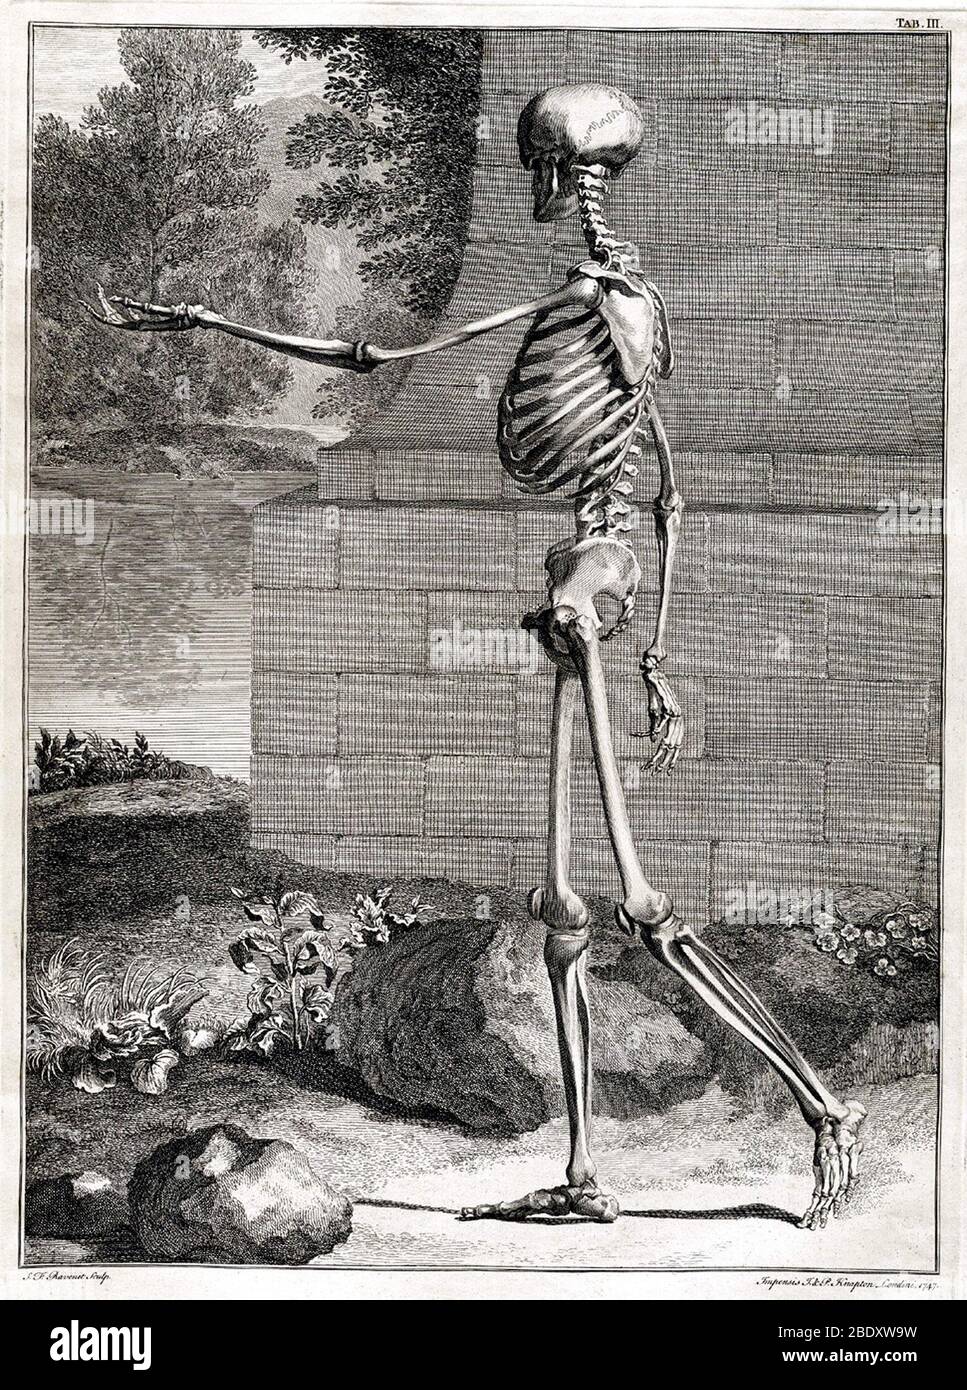 Gravure anatomique du XVIIIe siècle Banque D'Images